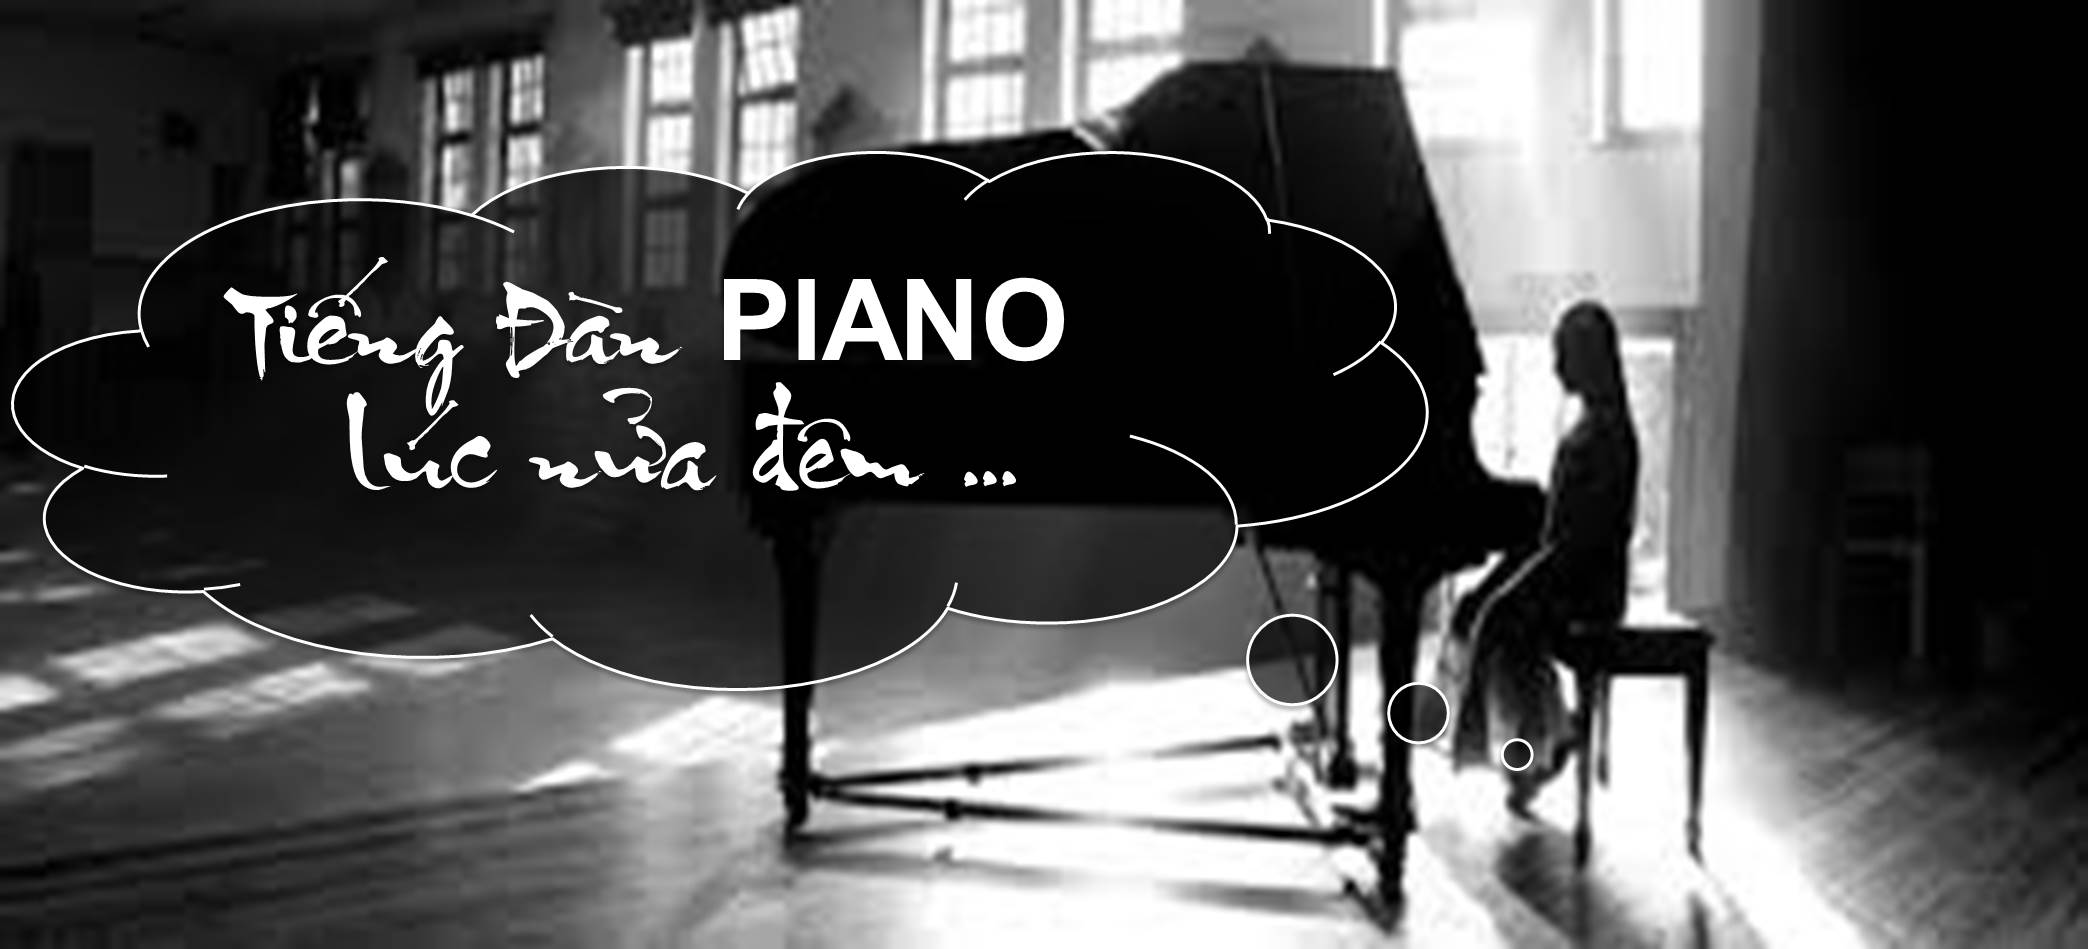 TIẾNG ĐÀN PIANO LÚC NỬA ĐÊM